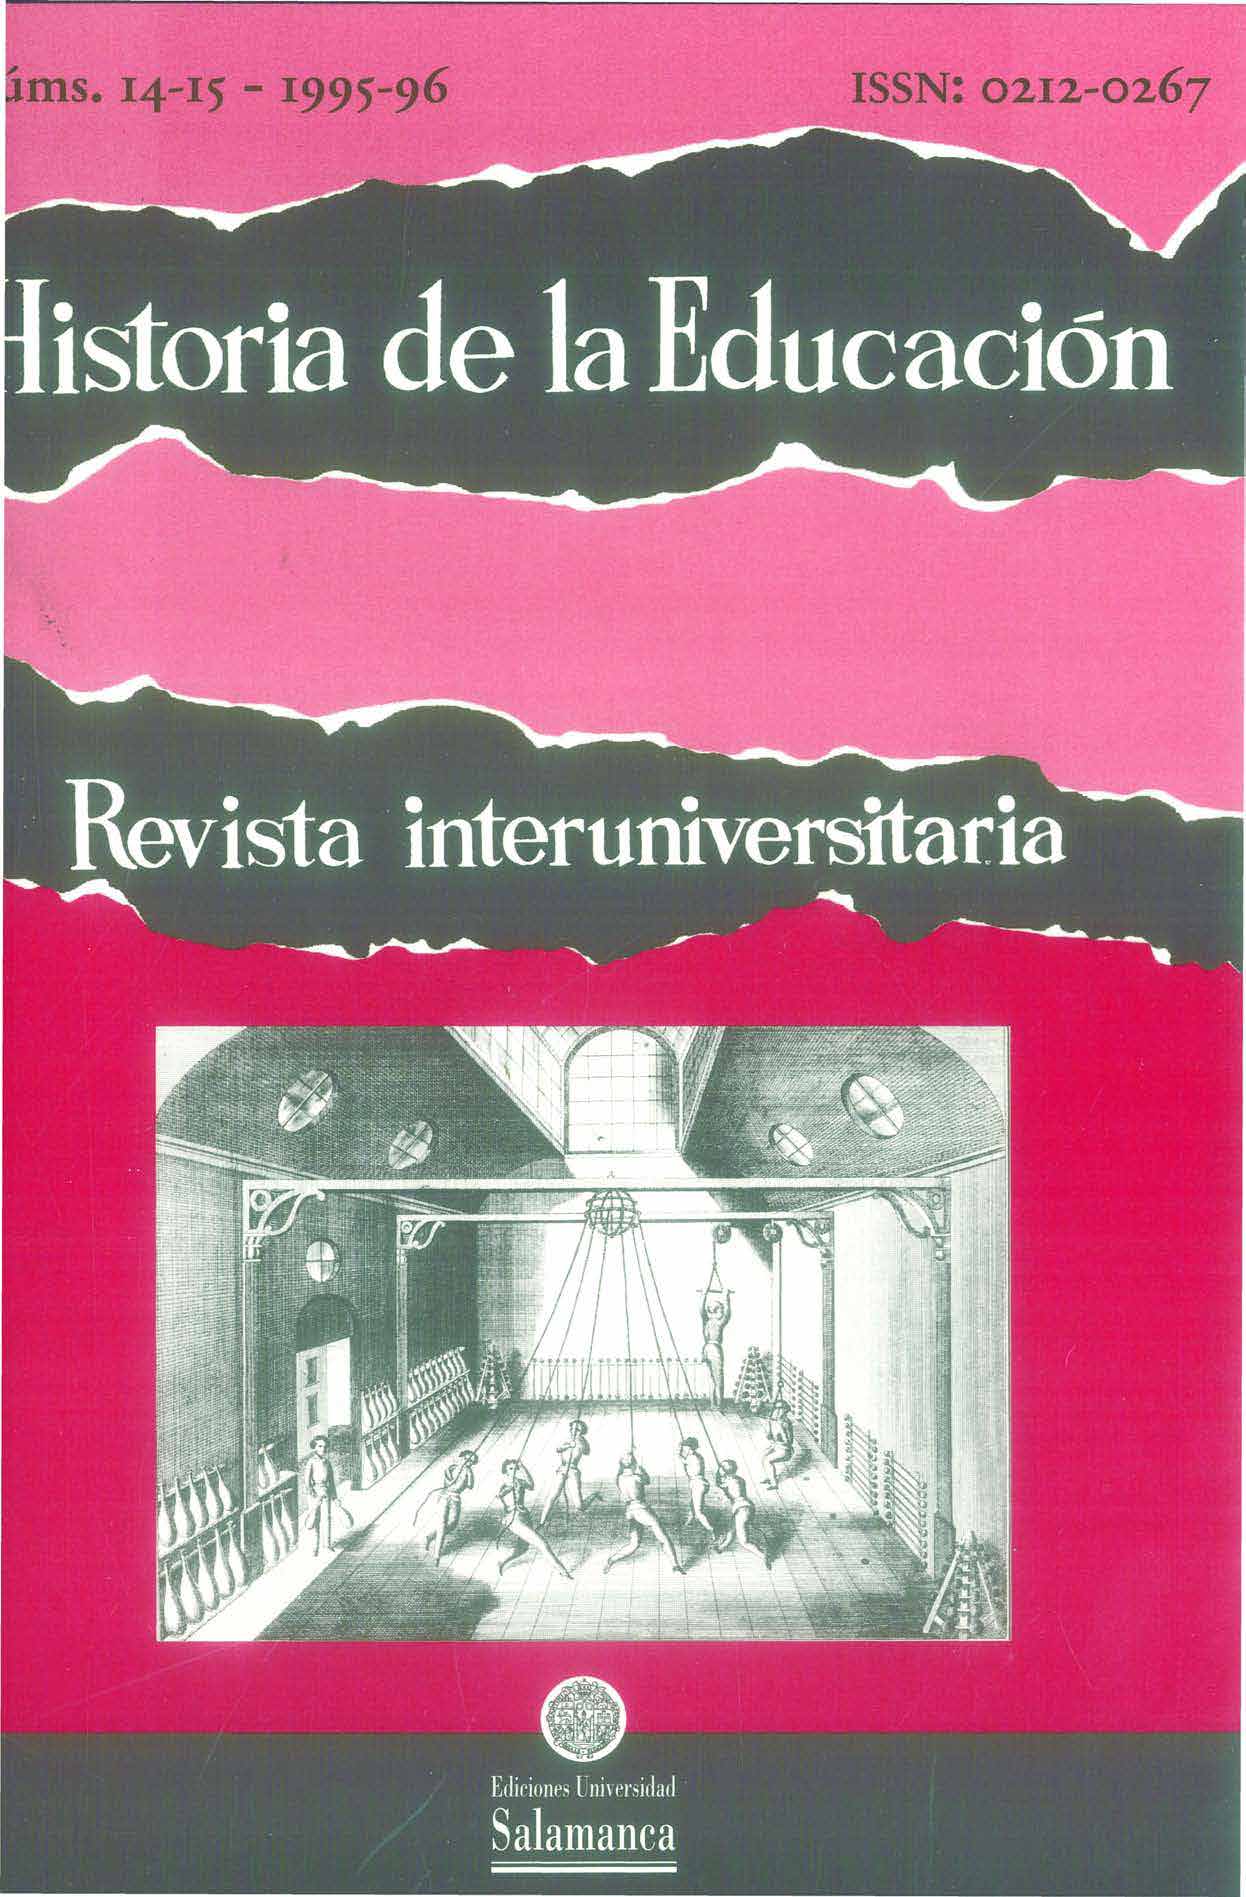                         Ver Vol. 14 (1995): (Vol. 14-15) Historia de la educación física
                    